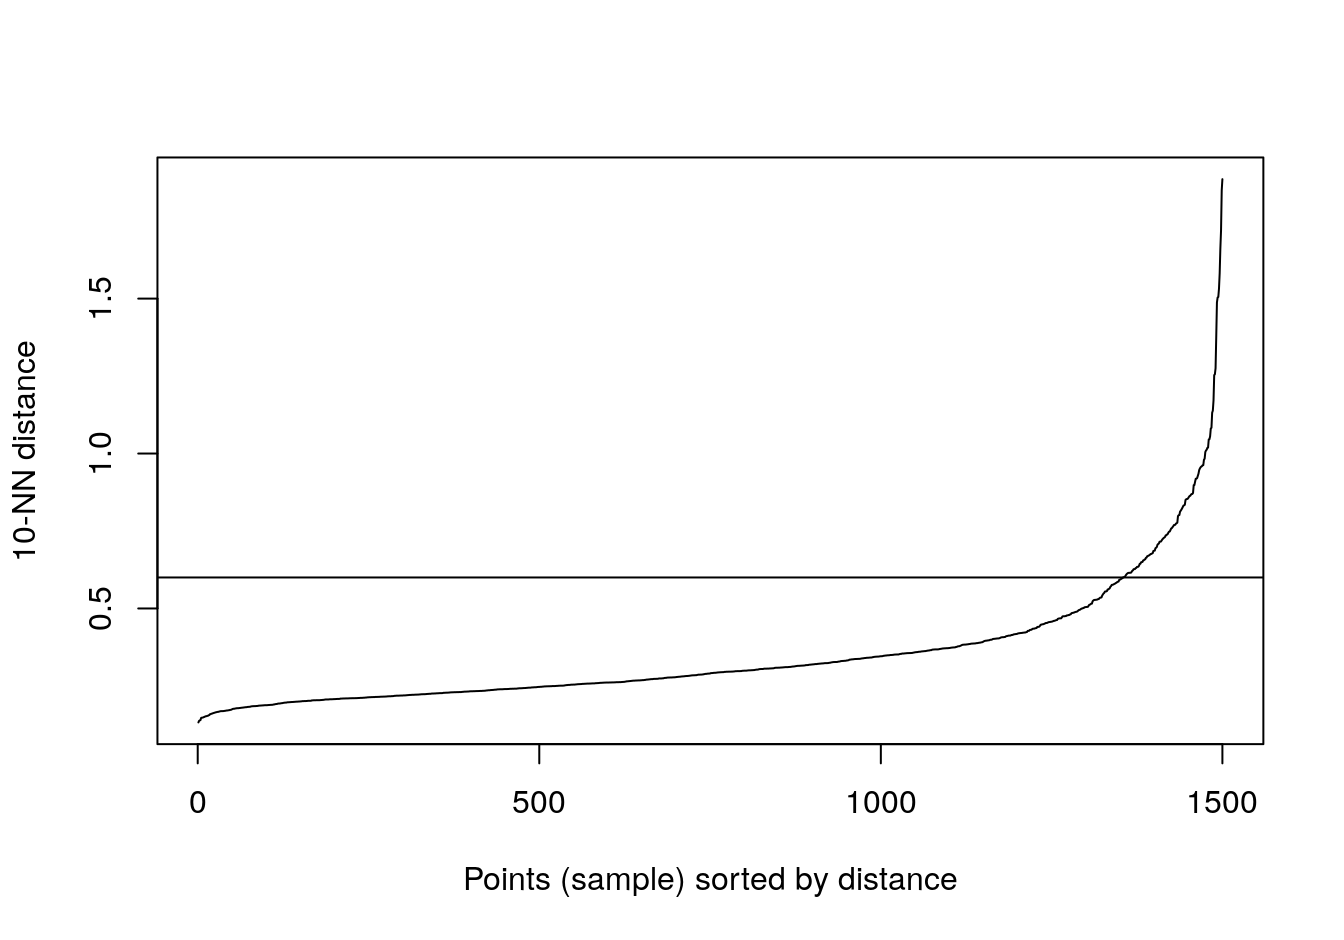 10-nearest neighbour distances for the blobs data set